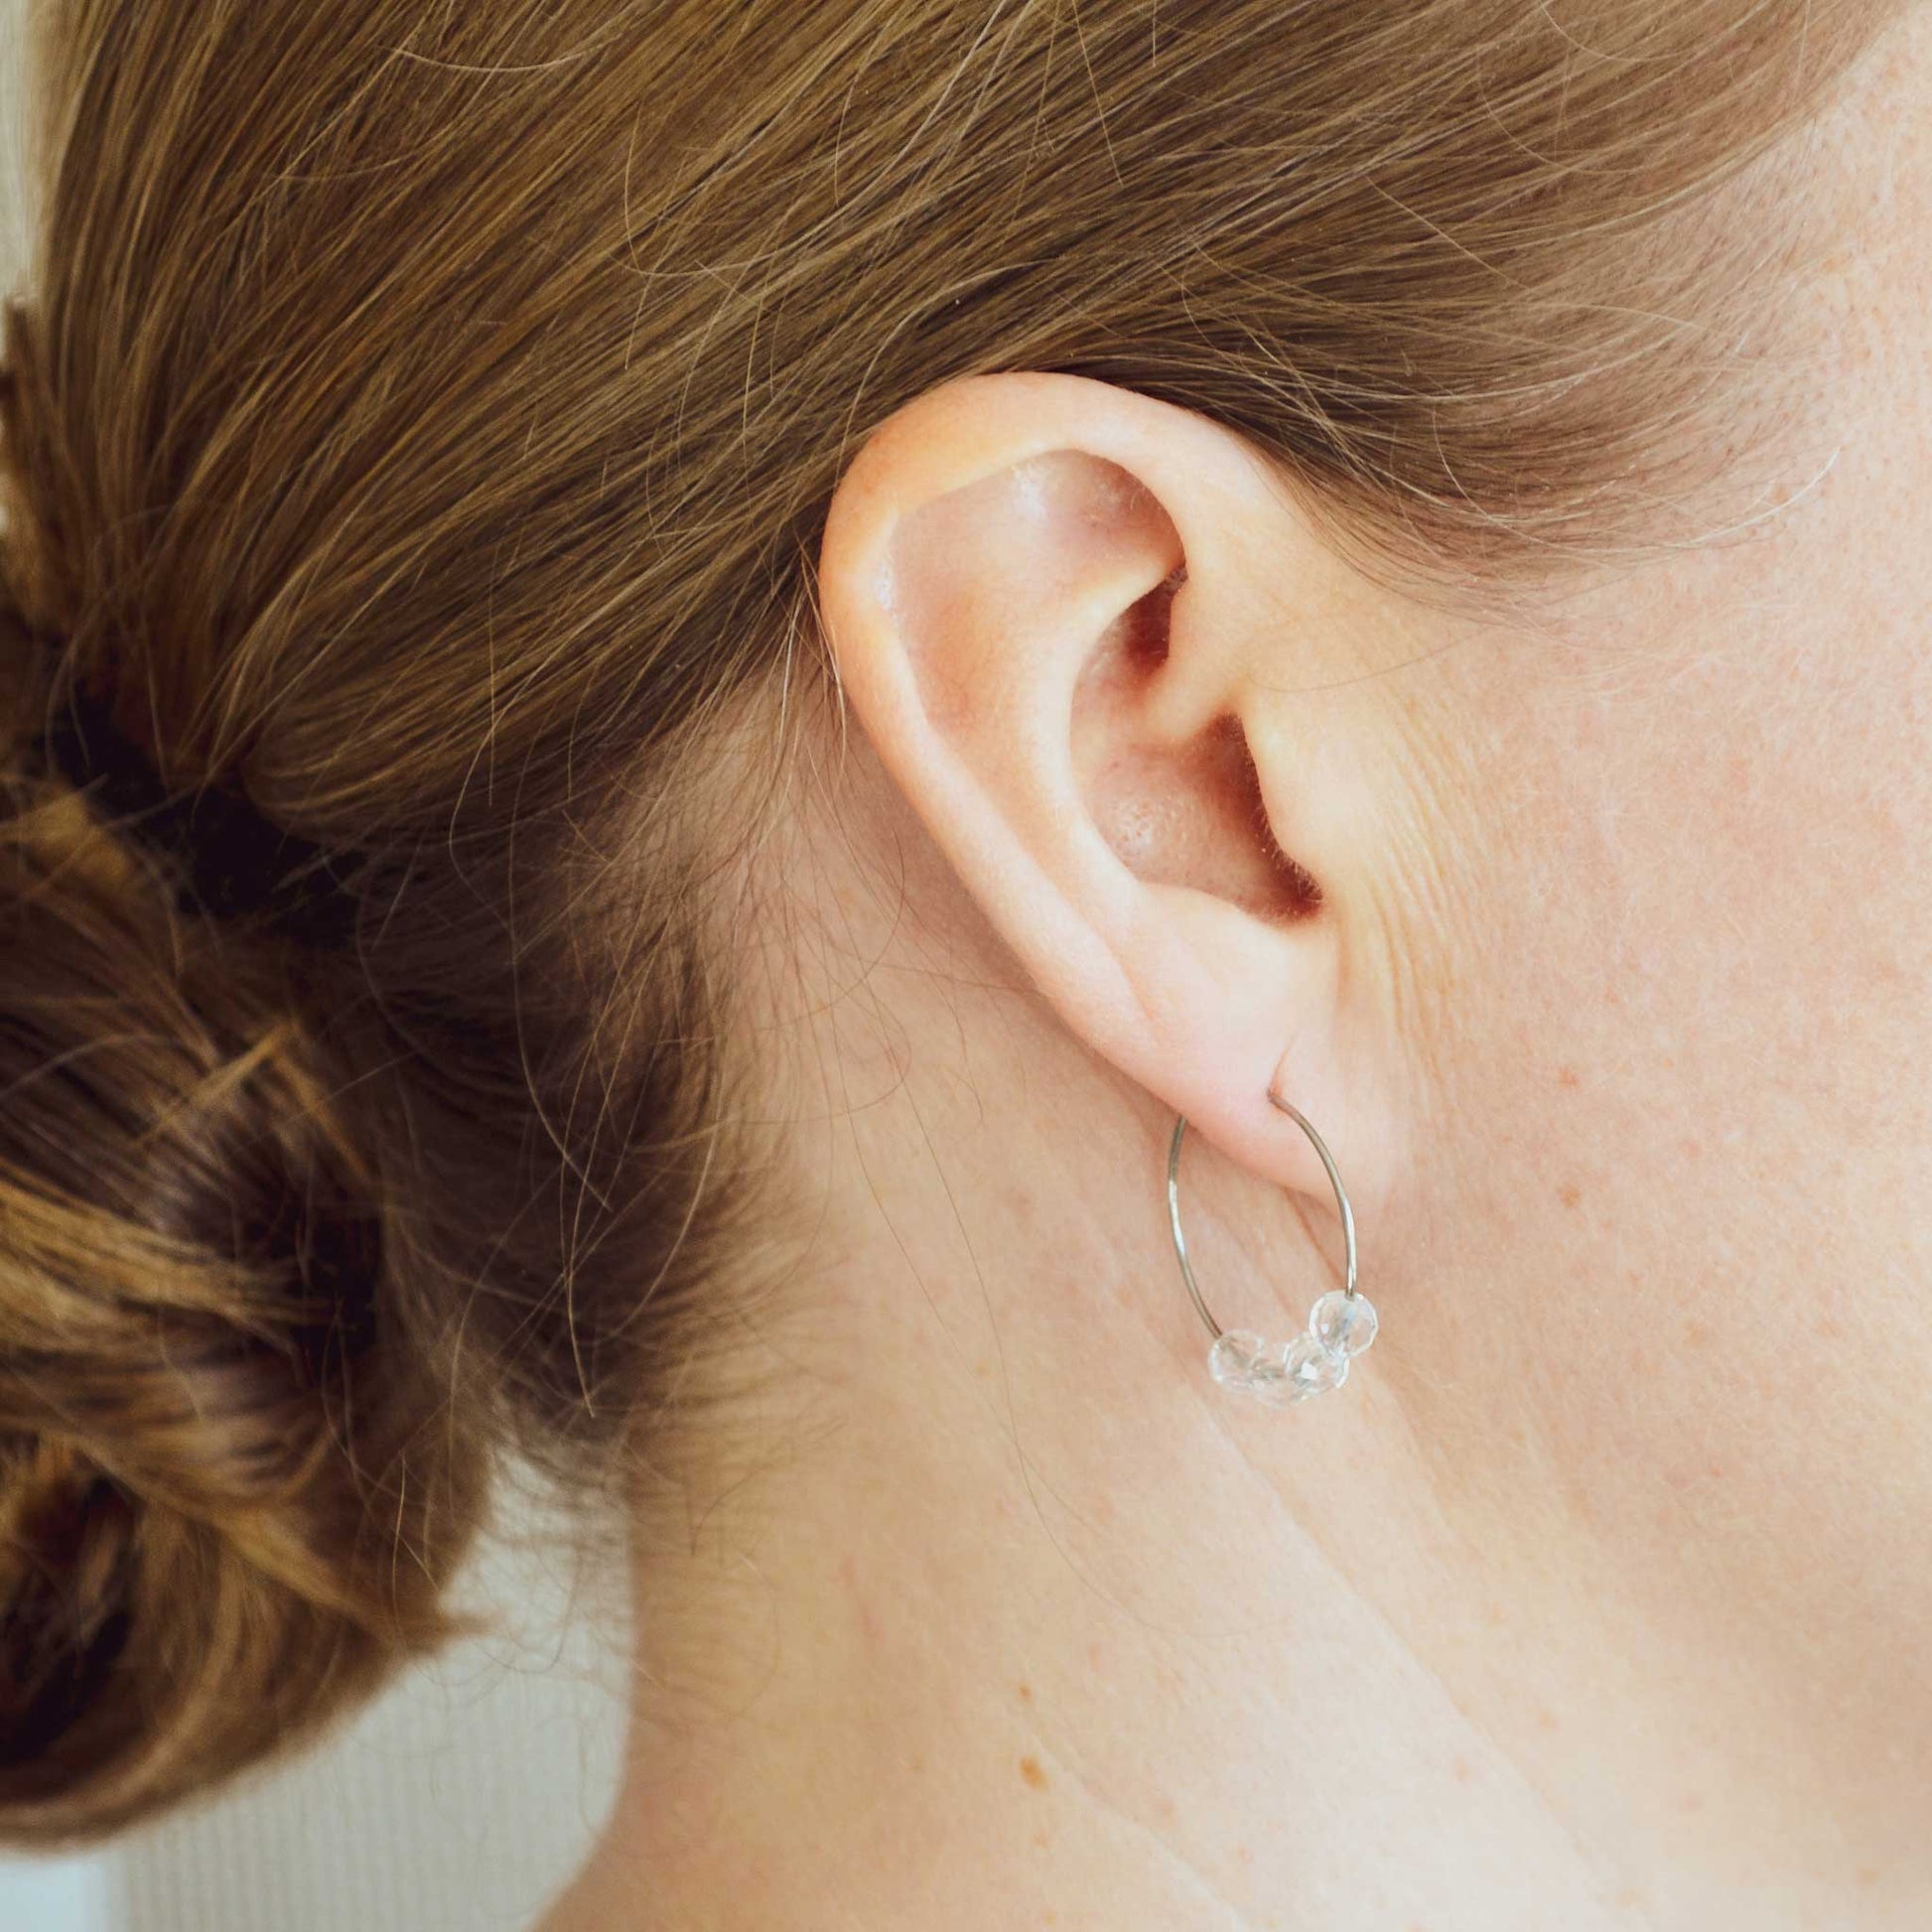 Woman wearing Clear Quartz earring hoop in earlobe